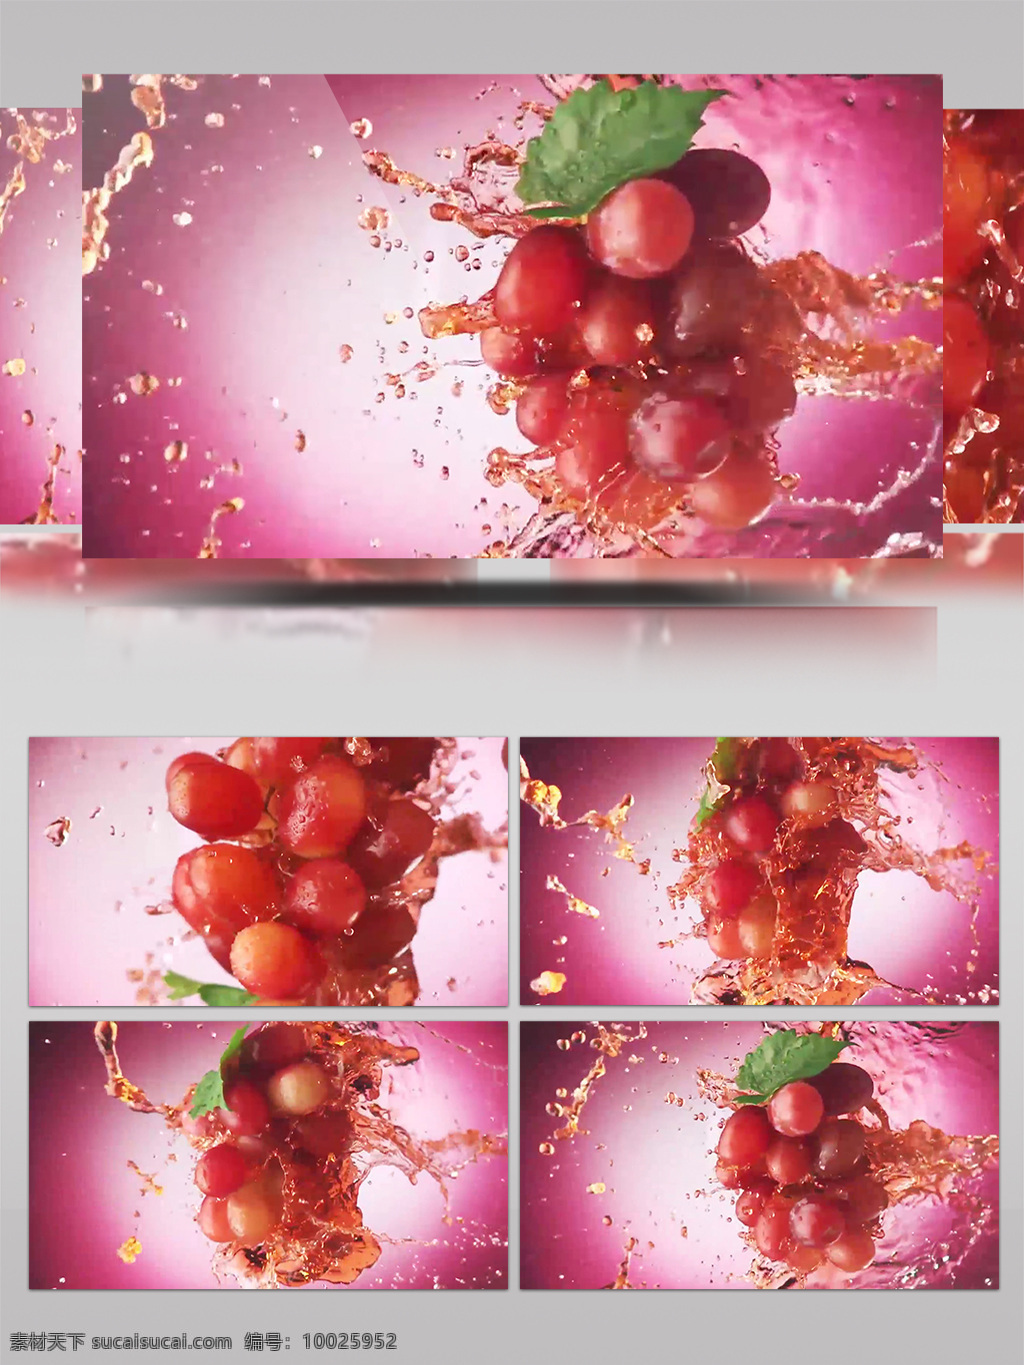 红提 葡萄 水果 水果素材 沙拉 慢镜头 高清实拍 延时实拍 摆盘 各种素材 素材水果